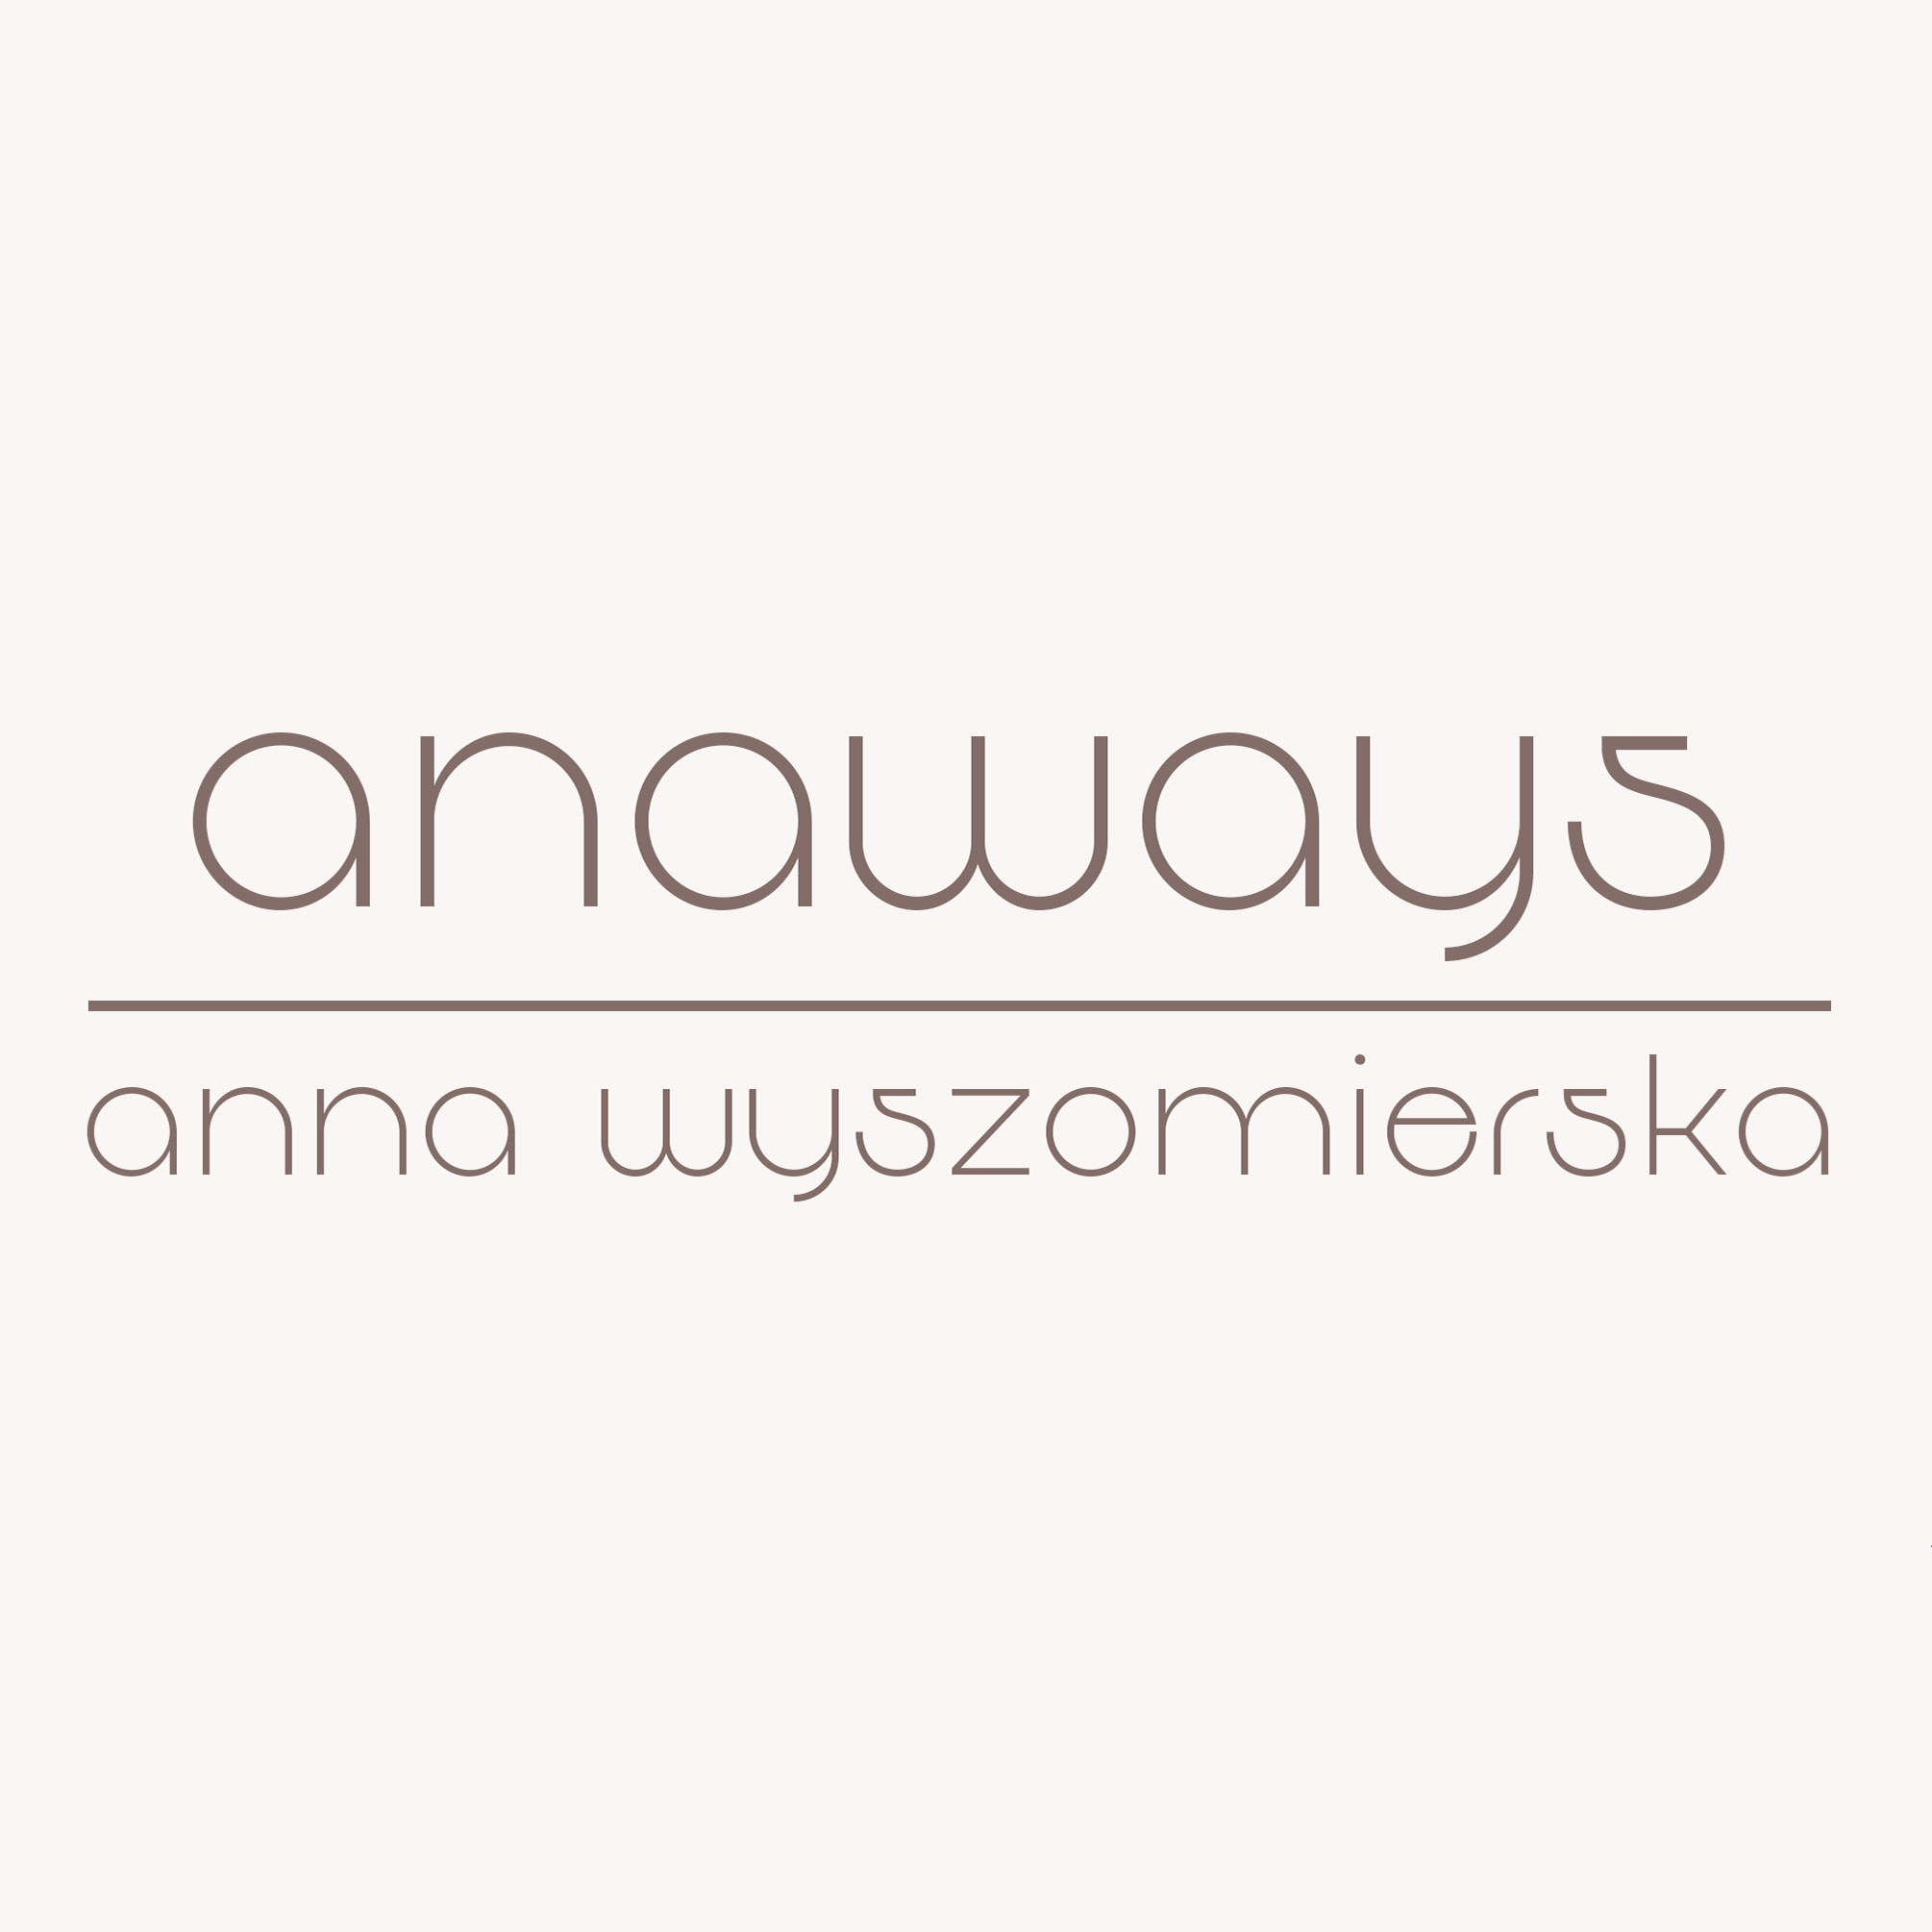 Anna Wyszomierska